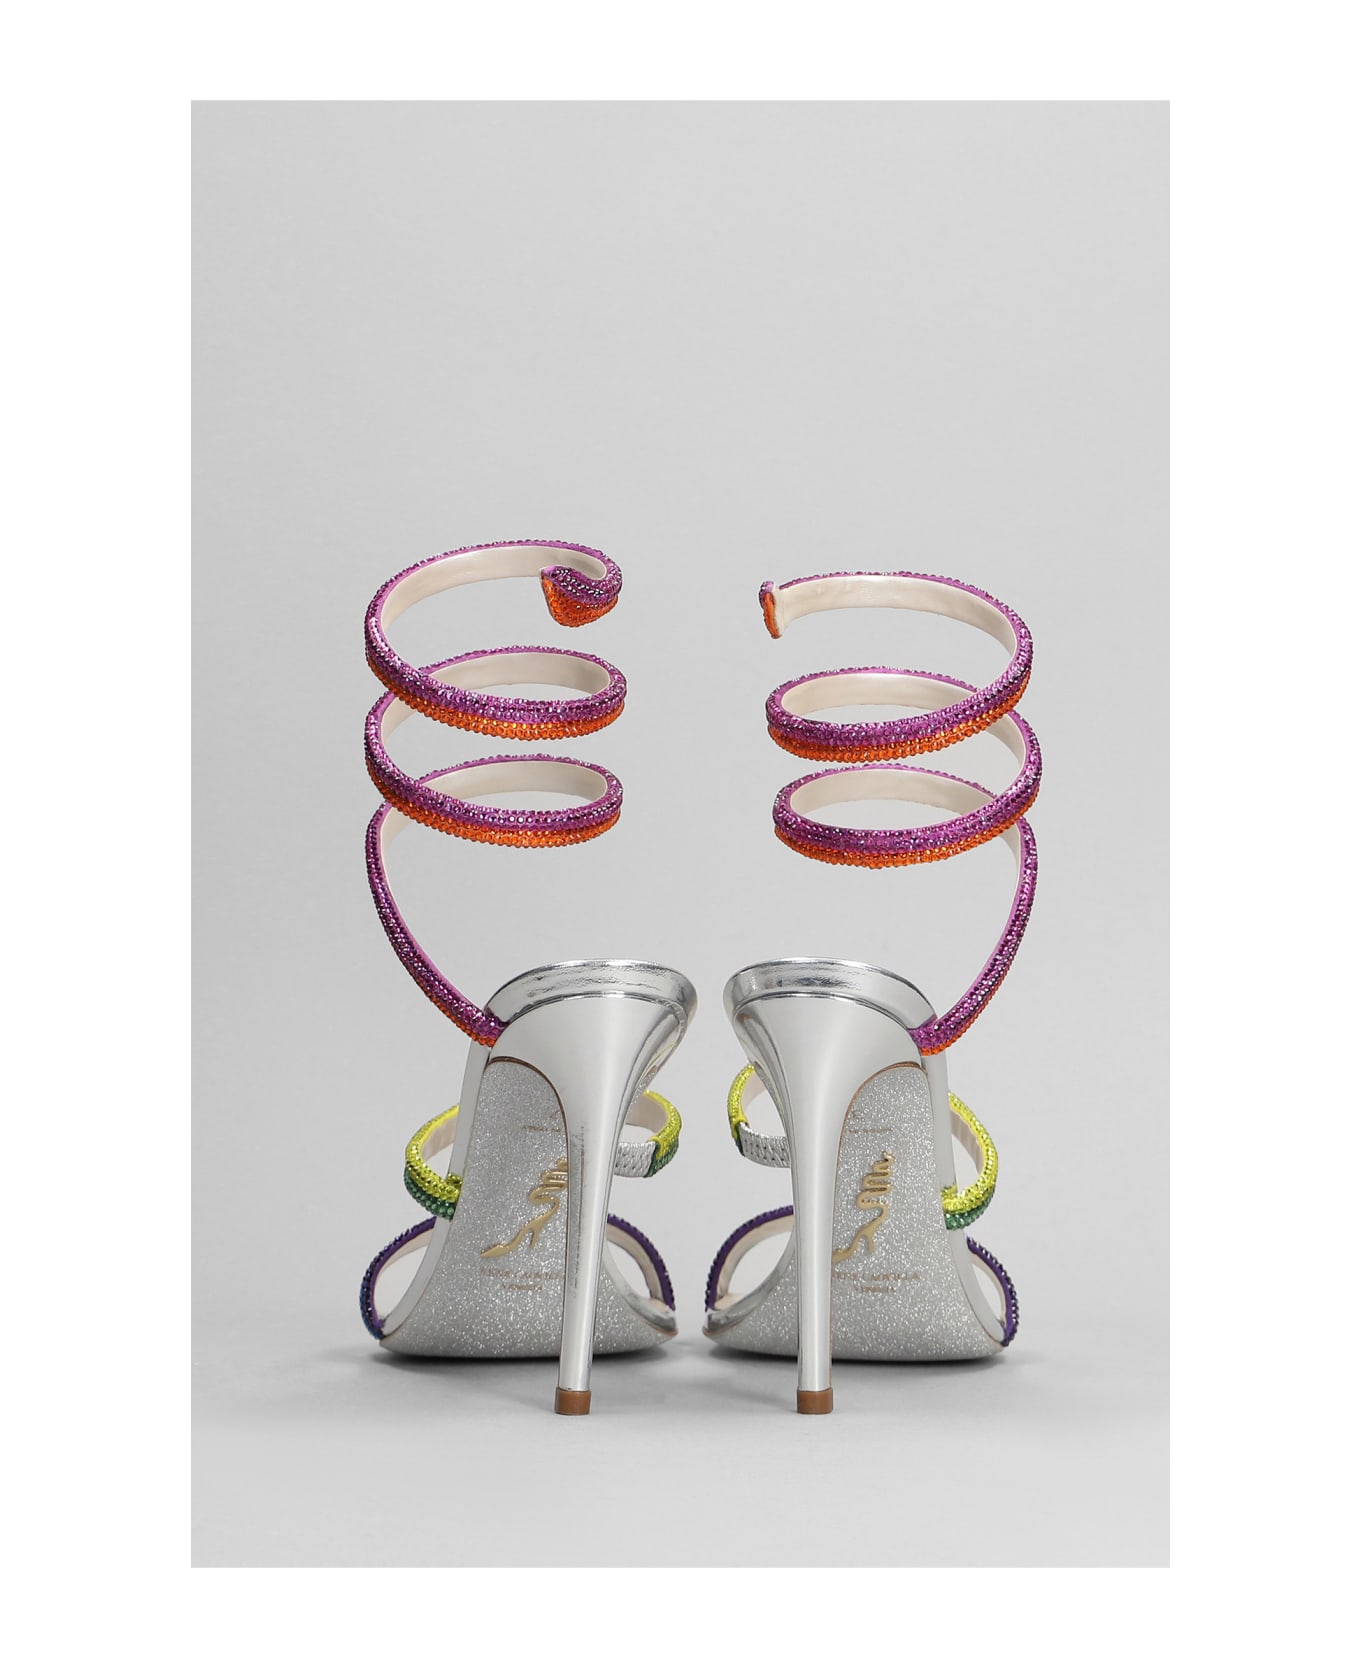 René Caovilla Rainbow Sandals In Silver Leather - silver